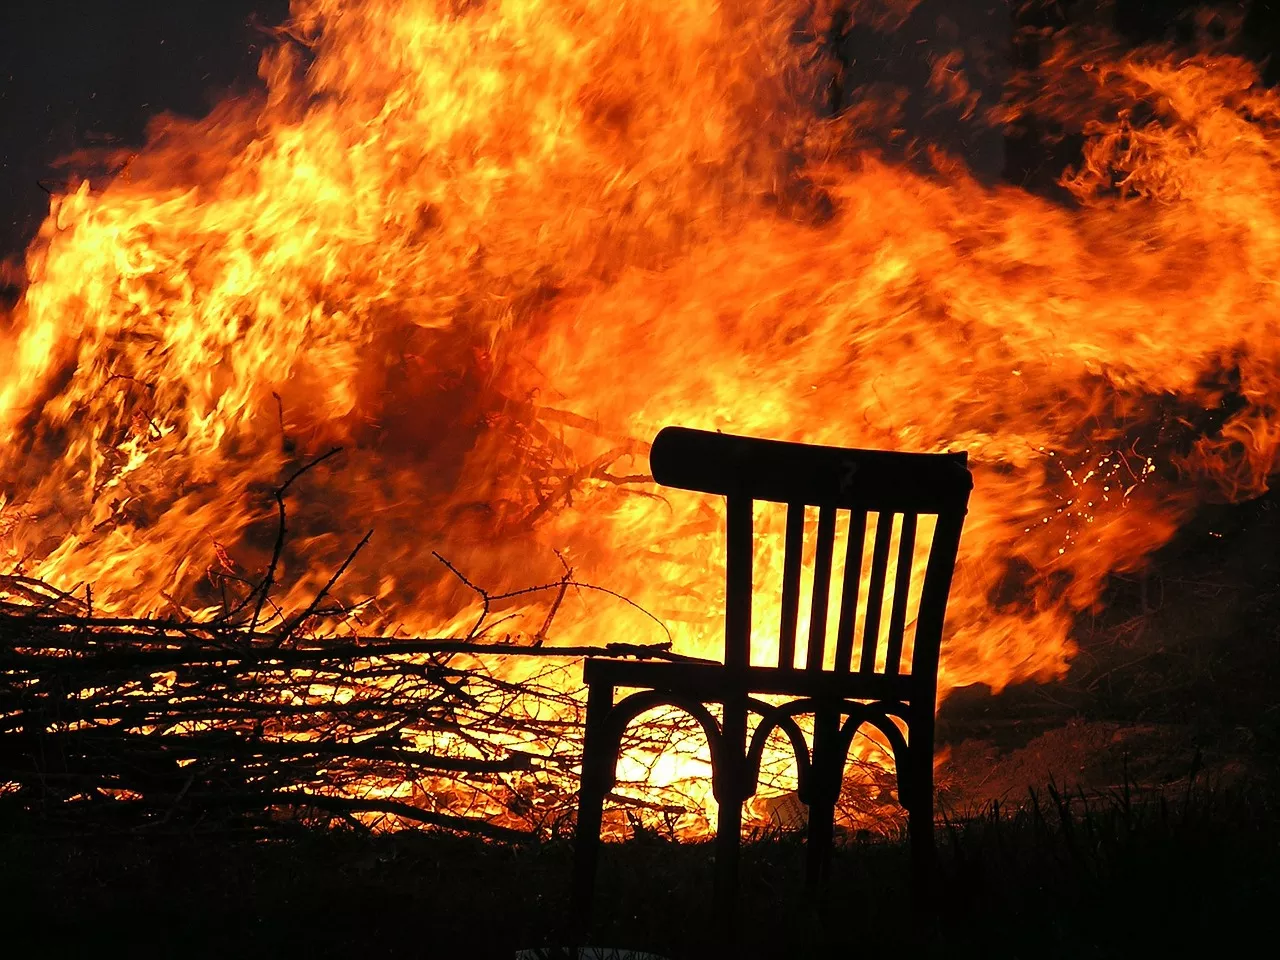 Русскоязычный житель Миннесоты хотел обмануть страховщиков и сжег свой дом